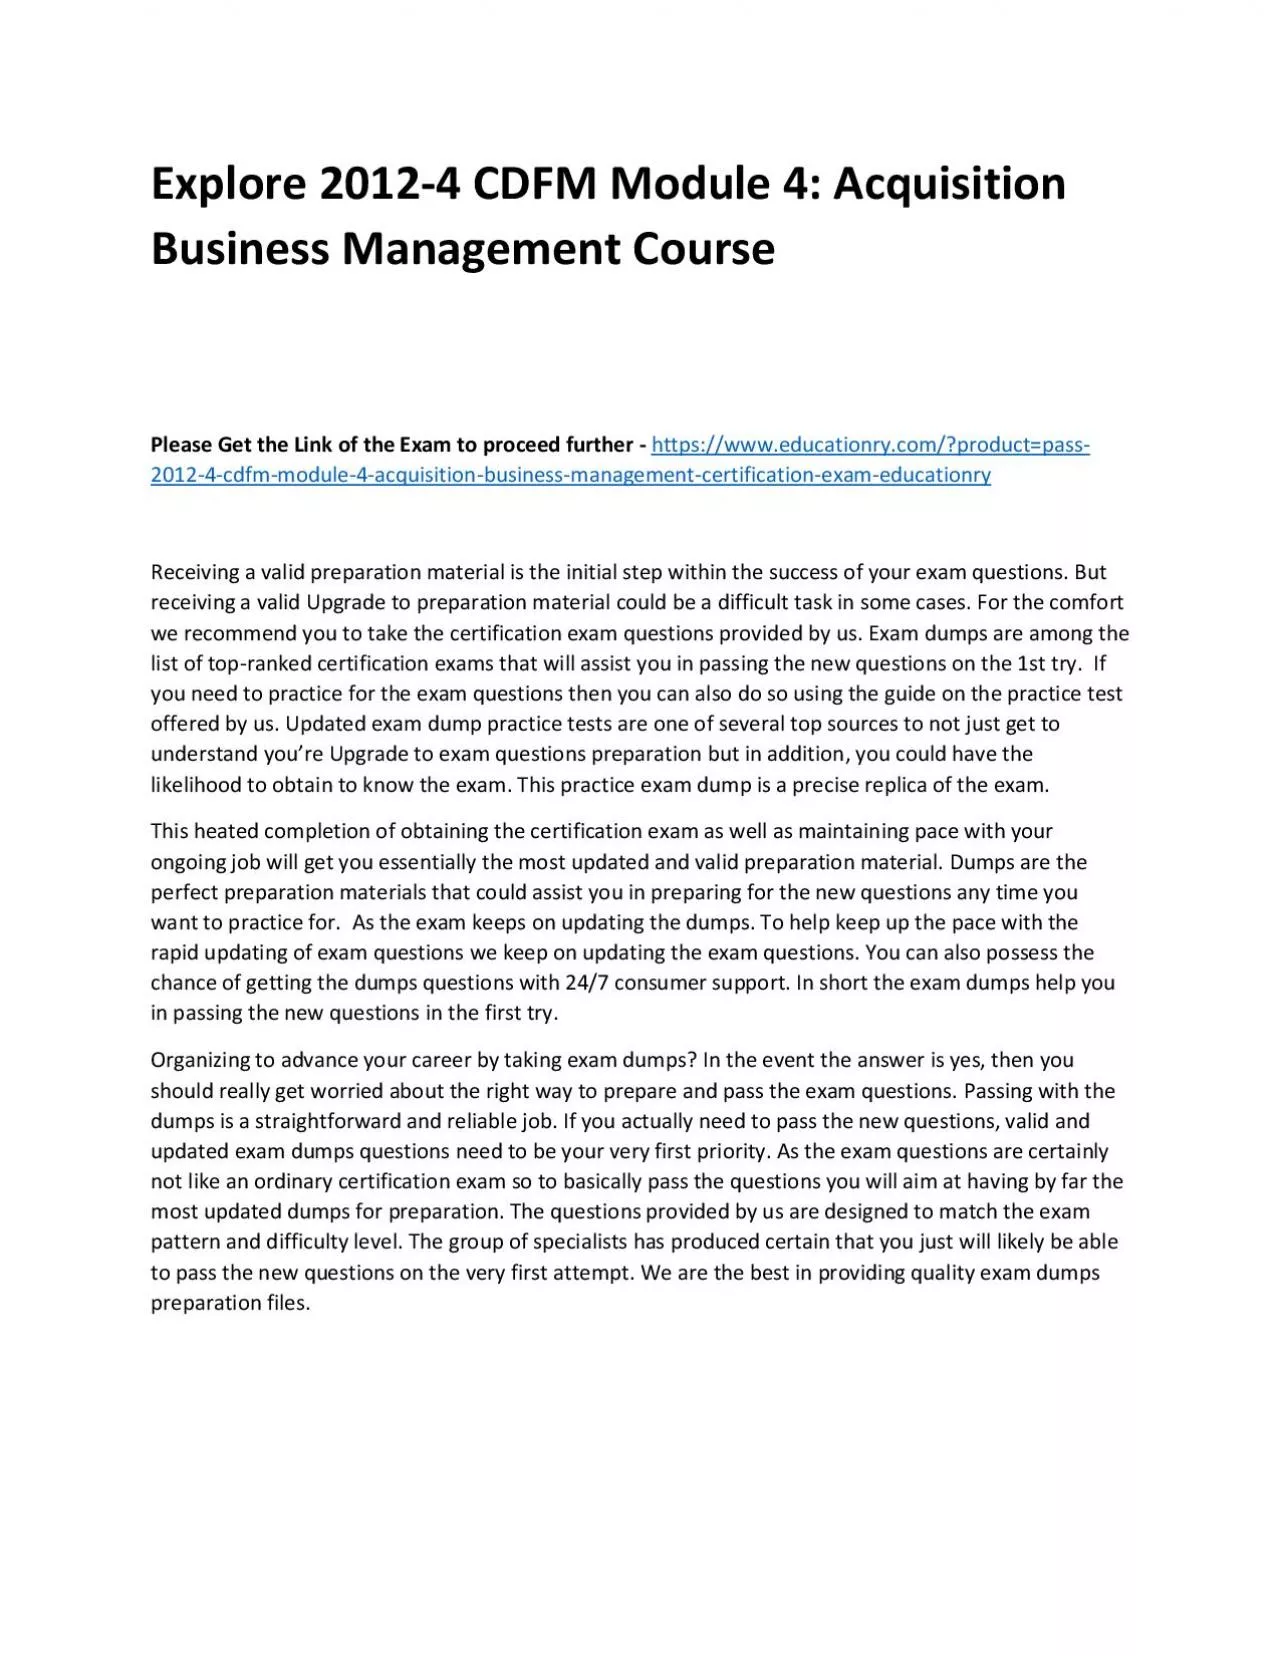 Explore 2012-4 CDFM Module 4: Acquisition Business Management Practice Course